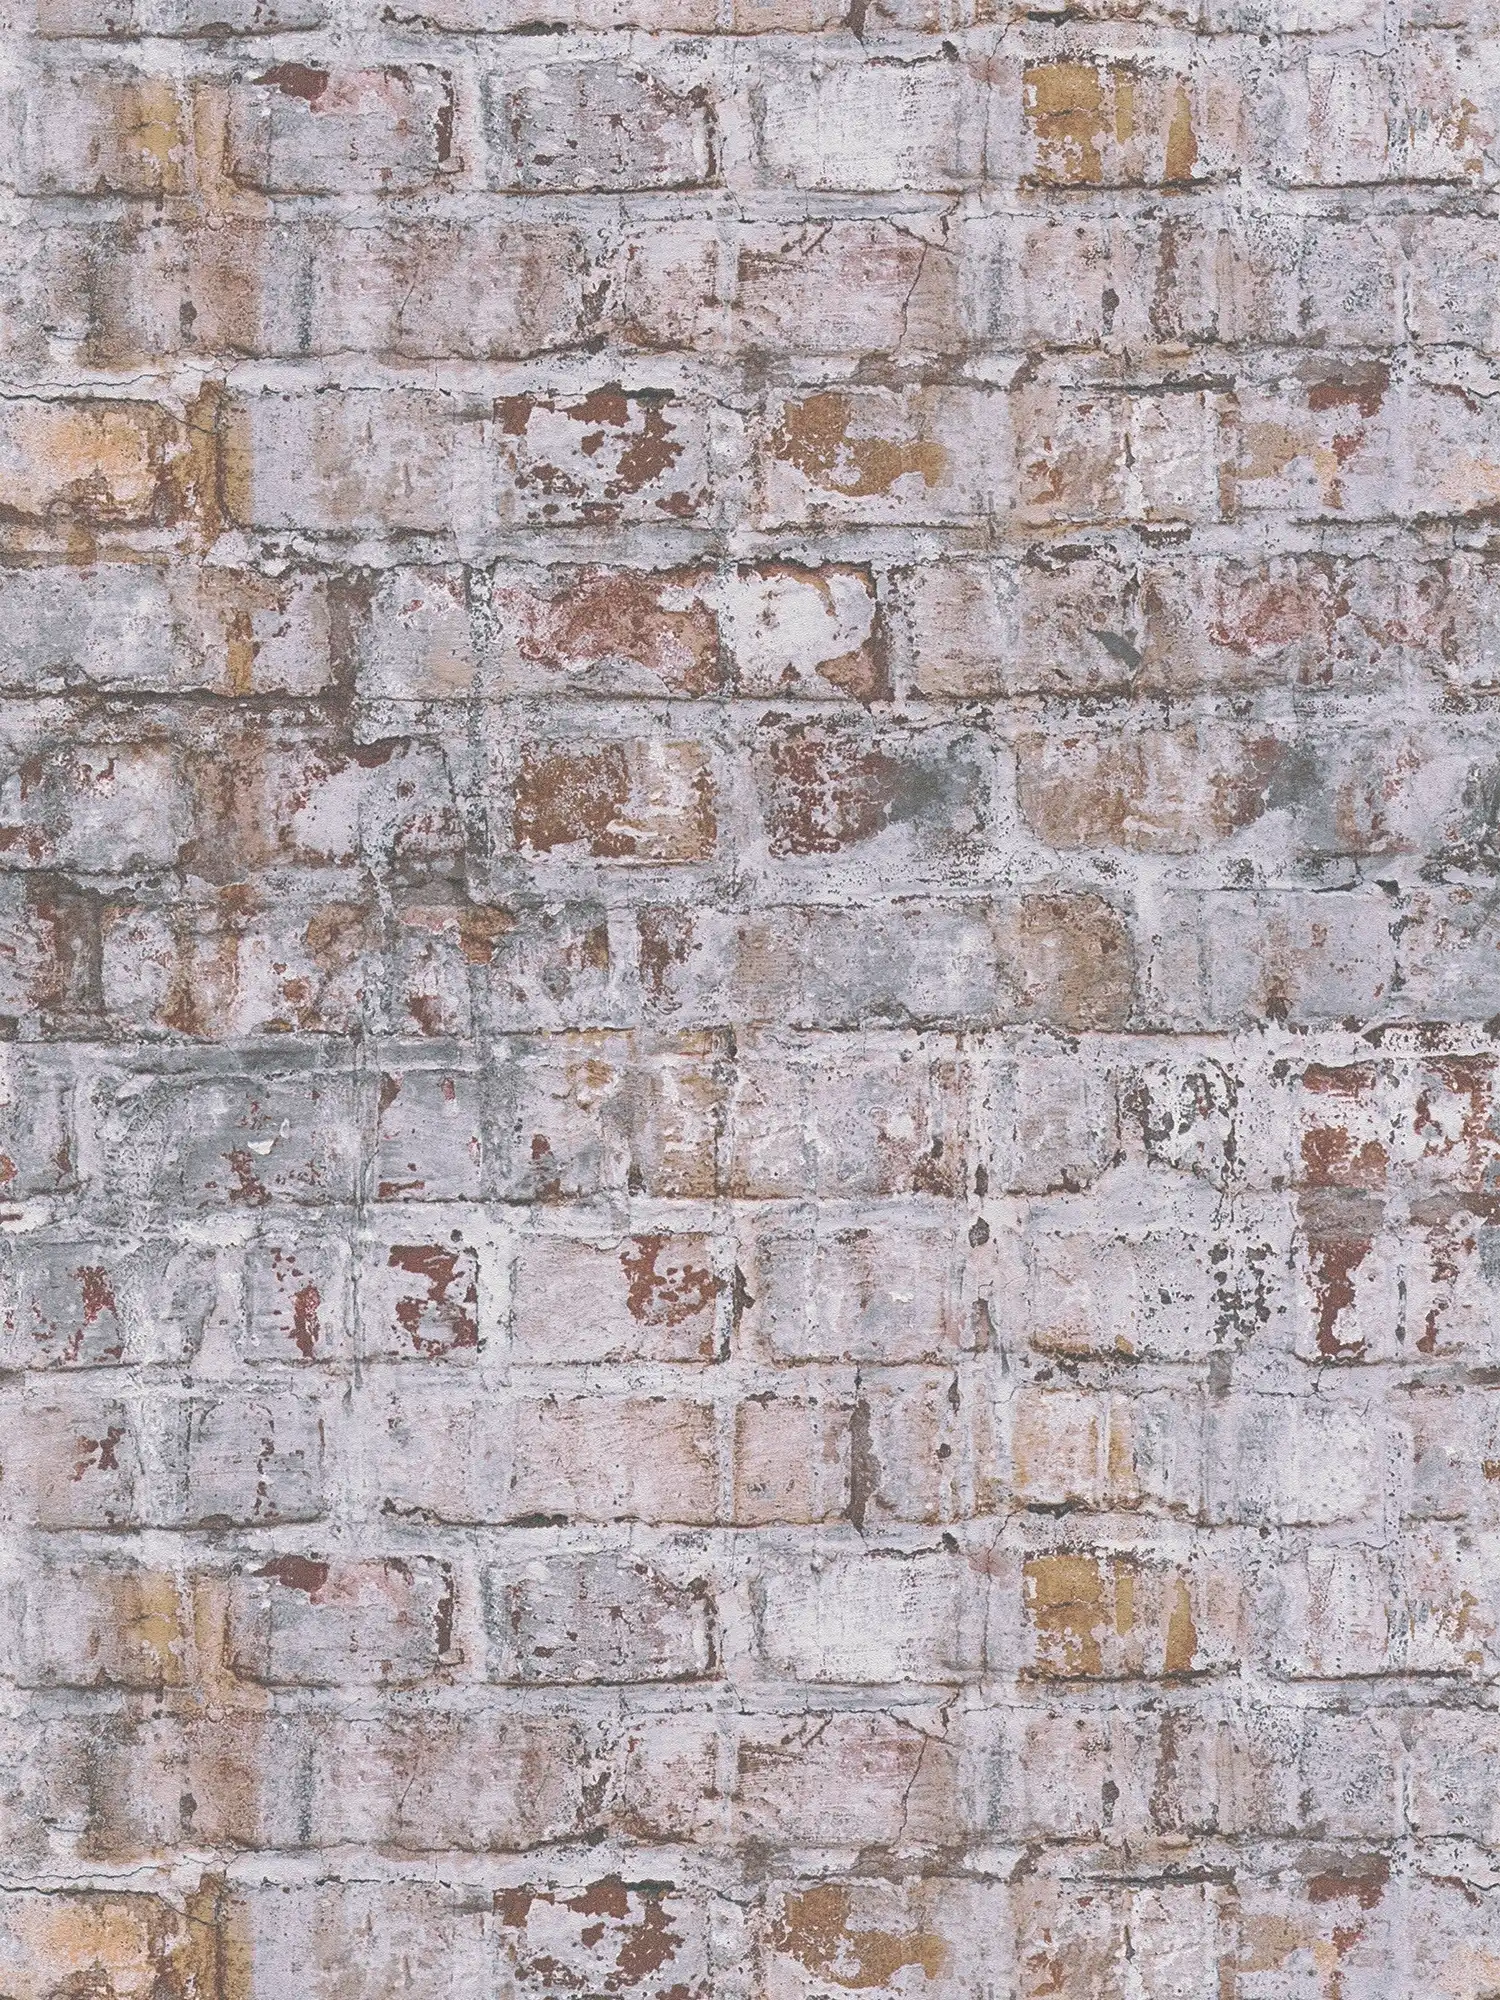 Vliesbehang in baksteenlook in metselwerkdesign - grijs, roest, wit
